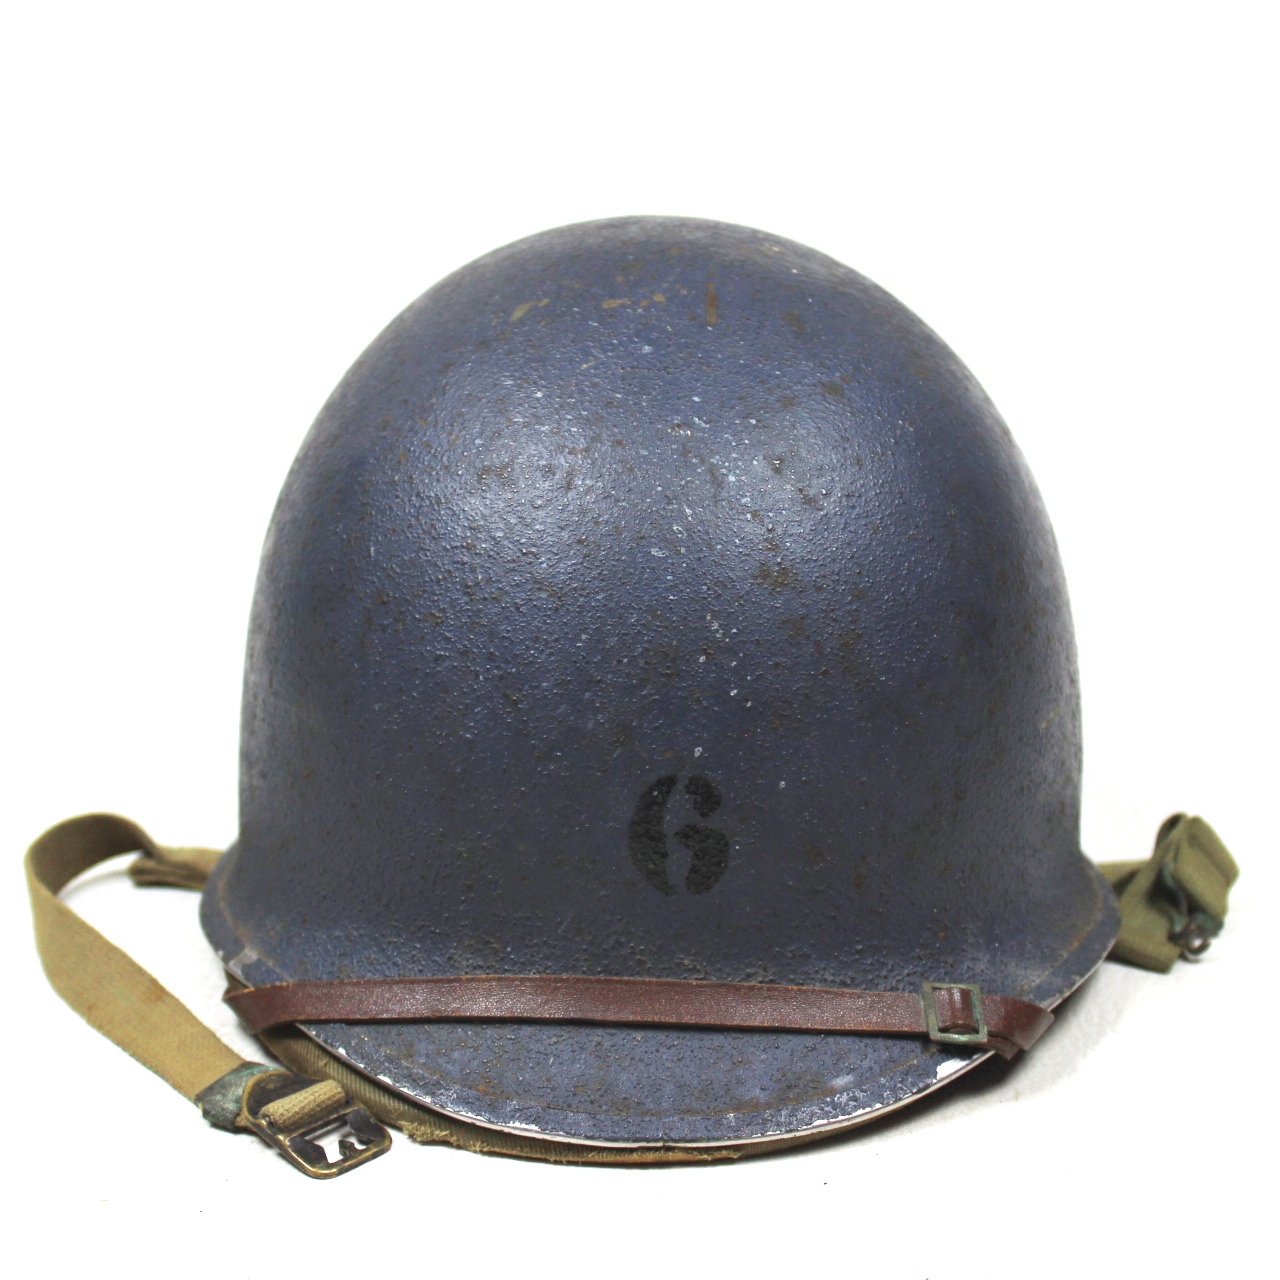 FS FB US Navy M1 helmet w/ 1st pattern Hawley liner